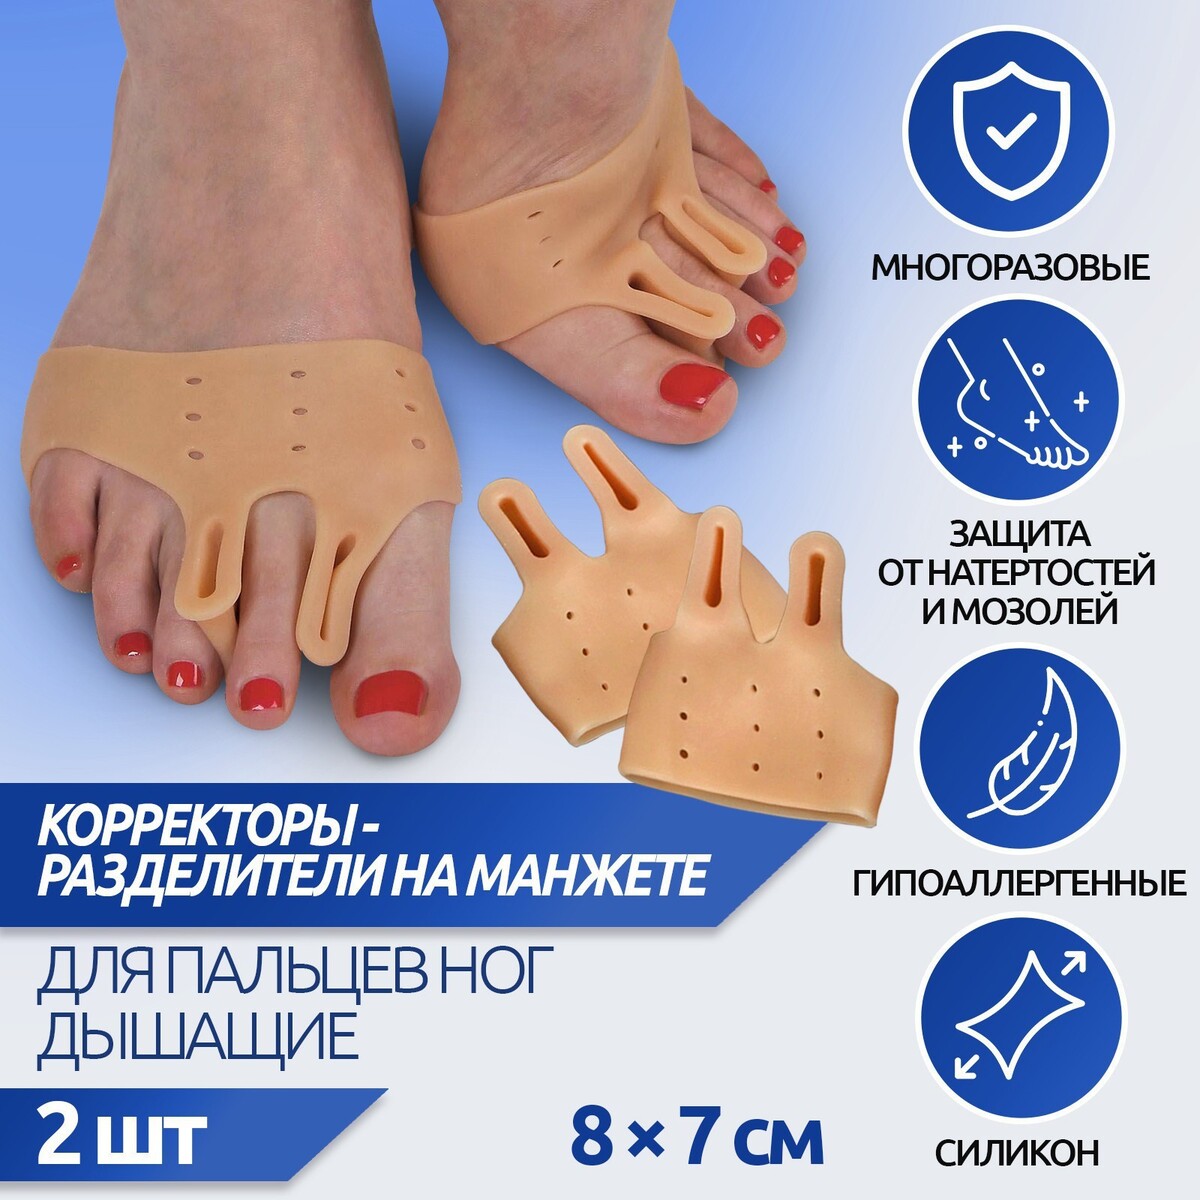 Корректоры - разделители для пальцев ног, на манжете, дышащие, 2 разделителя, силиконовые, 8 × 7 см, пара, цвет бежевый силиконовые браслеты